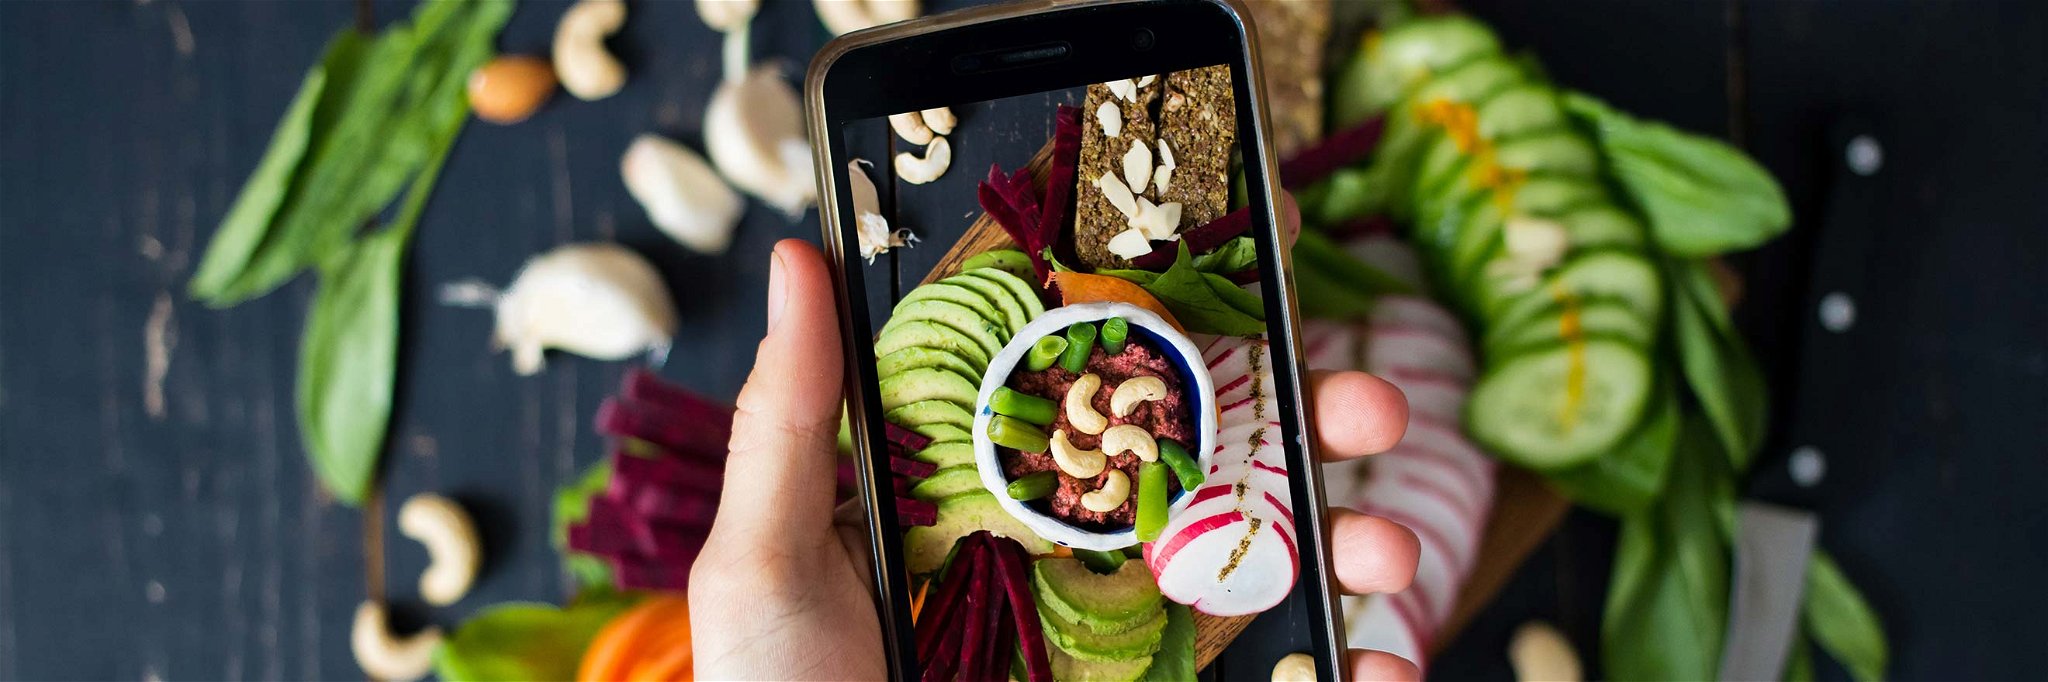 Social-Media-Plattformen wie Instagram sind übersät mit spannenden, veganen Gerichten.&nbsp;